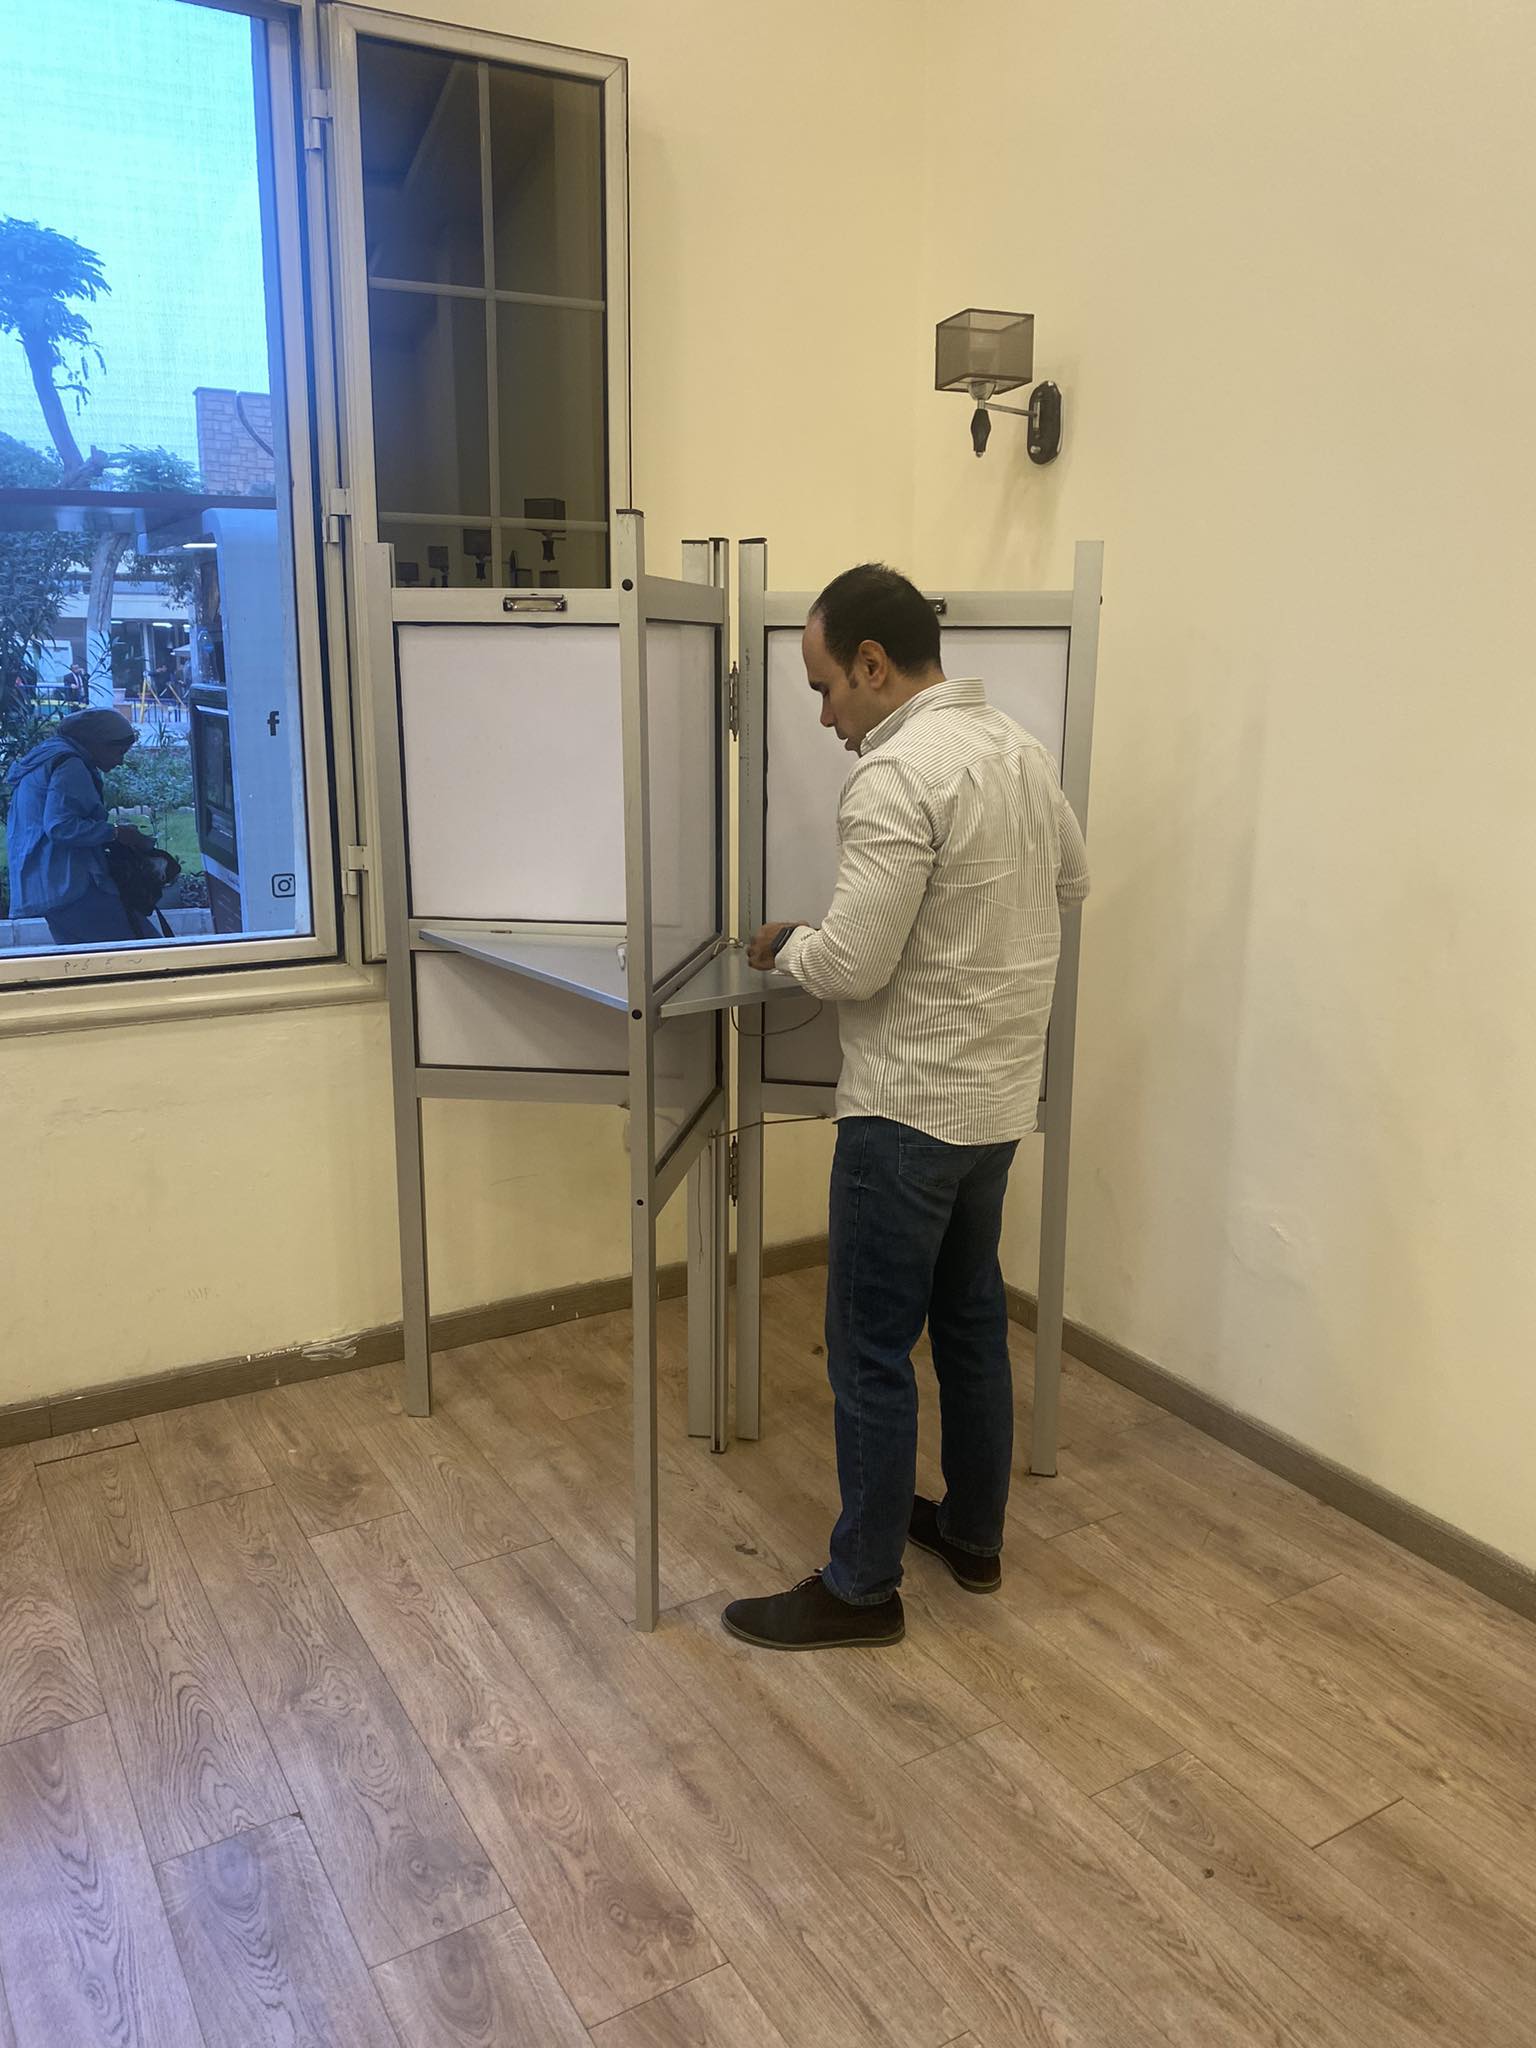 الصحفى ابراهيم احمد اثناء الادلاء بصوته فى الانتخابات الرئاسية